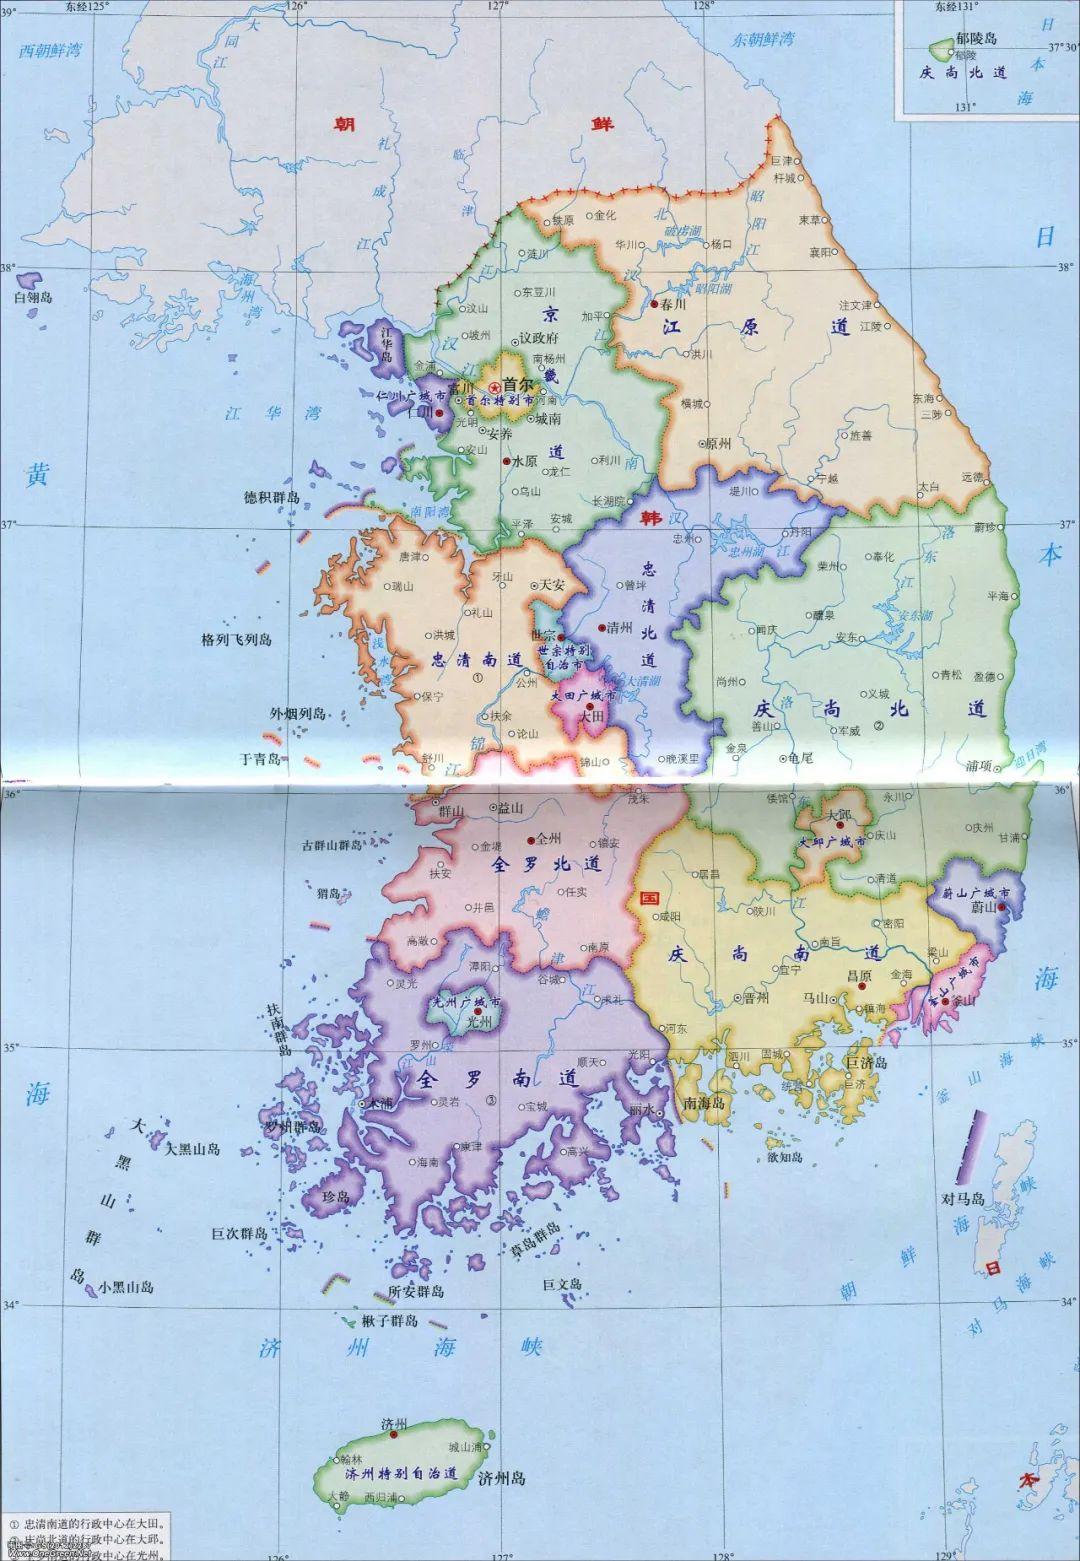 韩国地图中文版全图 - 韩国地图 - 地理教师网